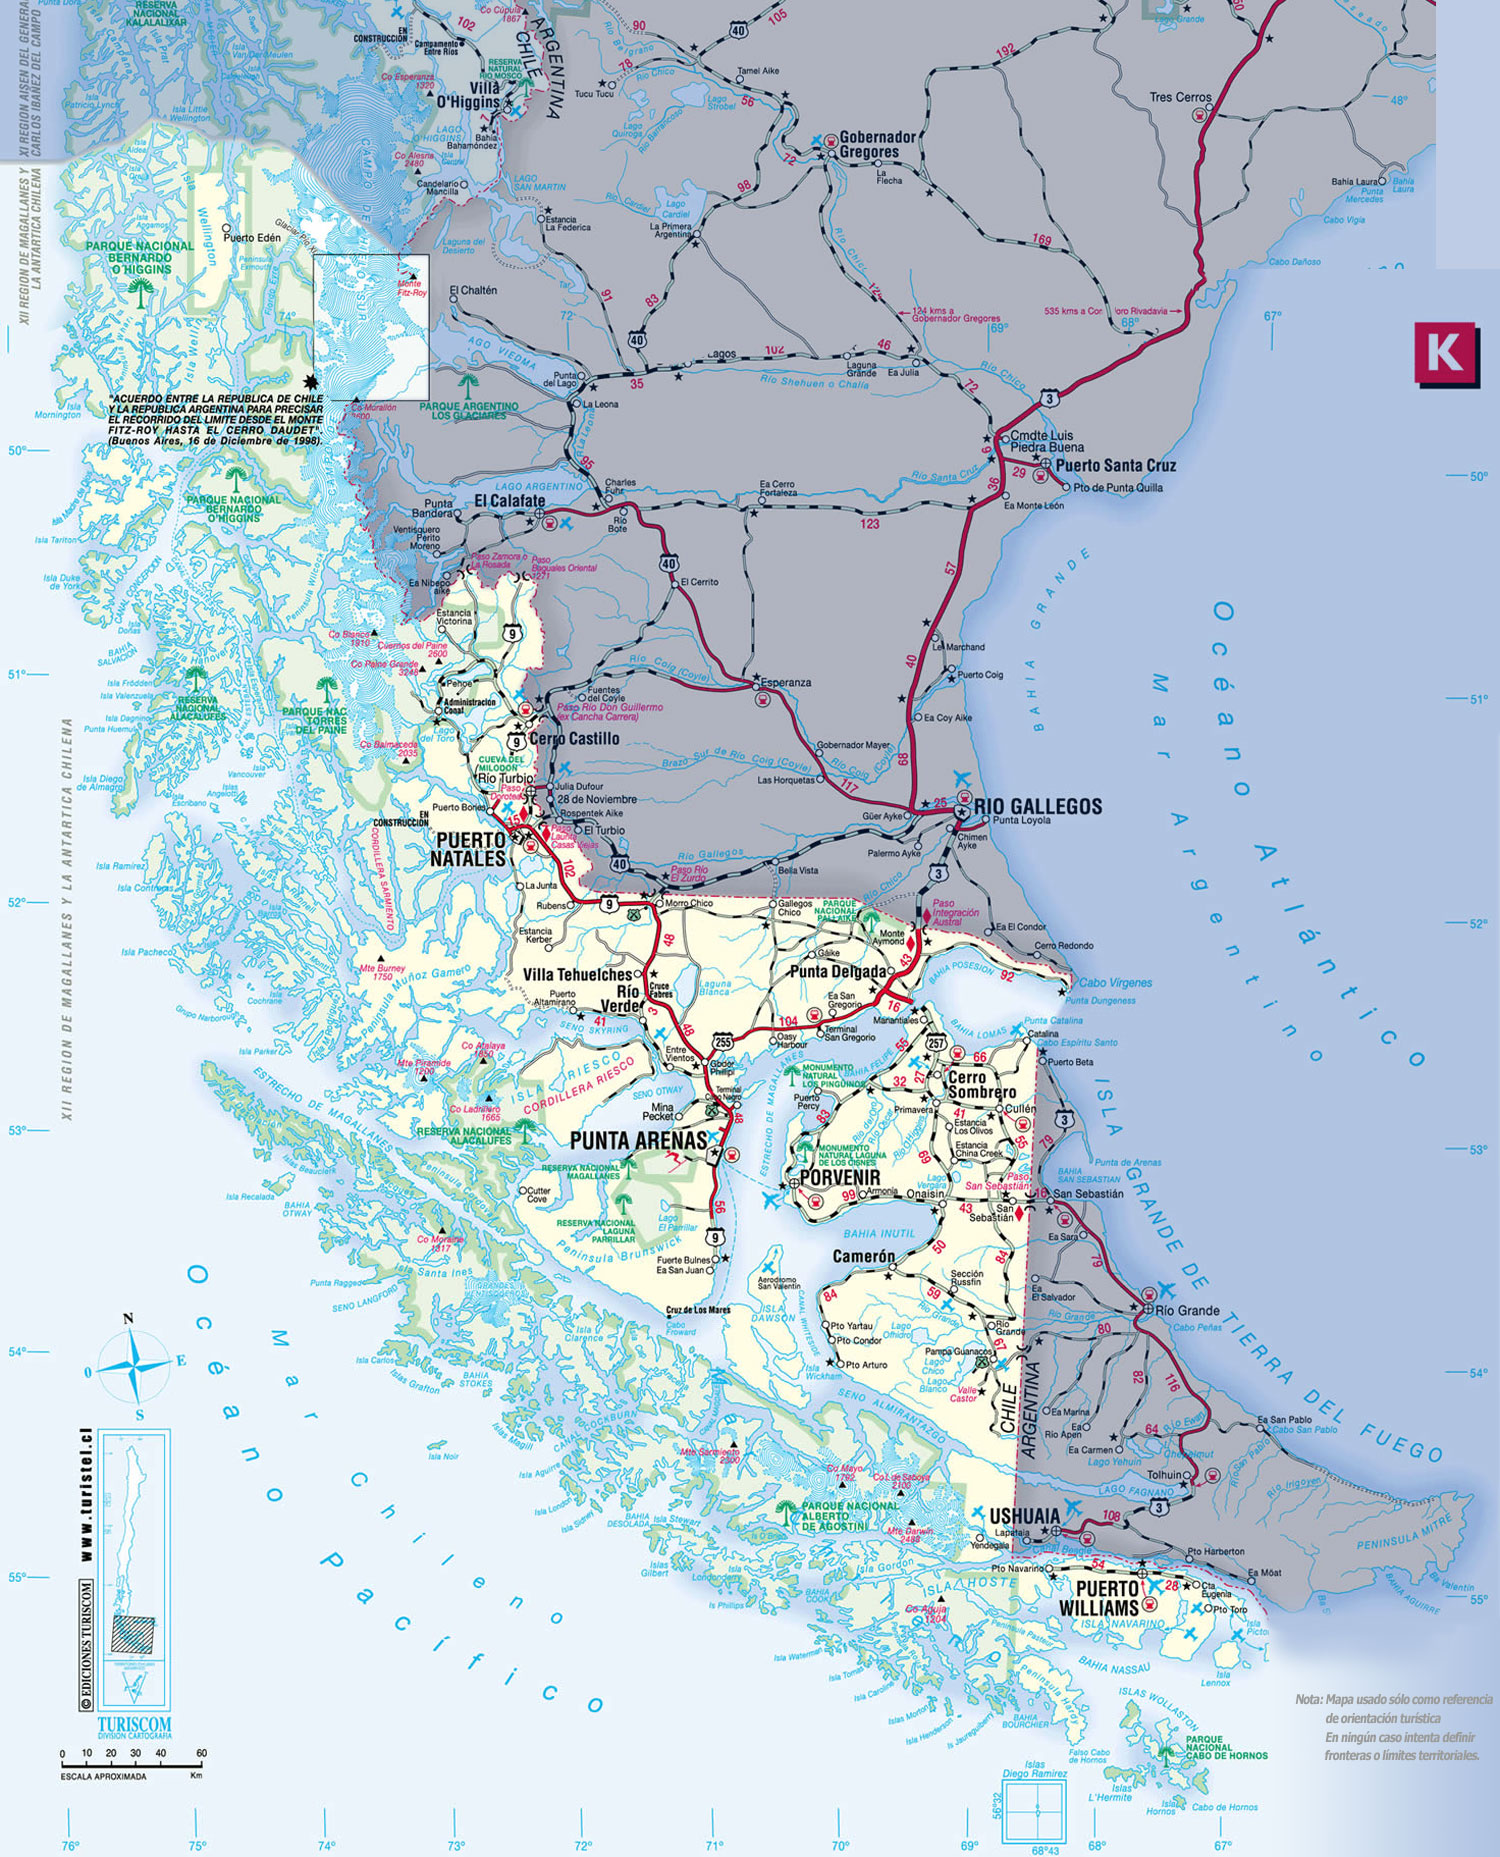 Estado de rutas y condición meteorológica, región de Magallanes, lunes 24 de junio, 19.30 horas